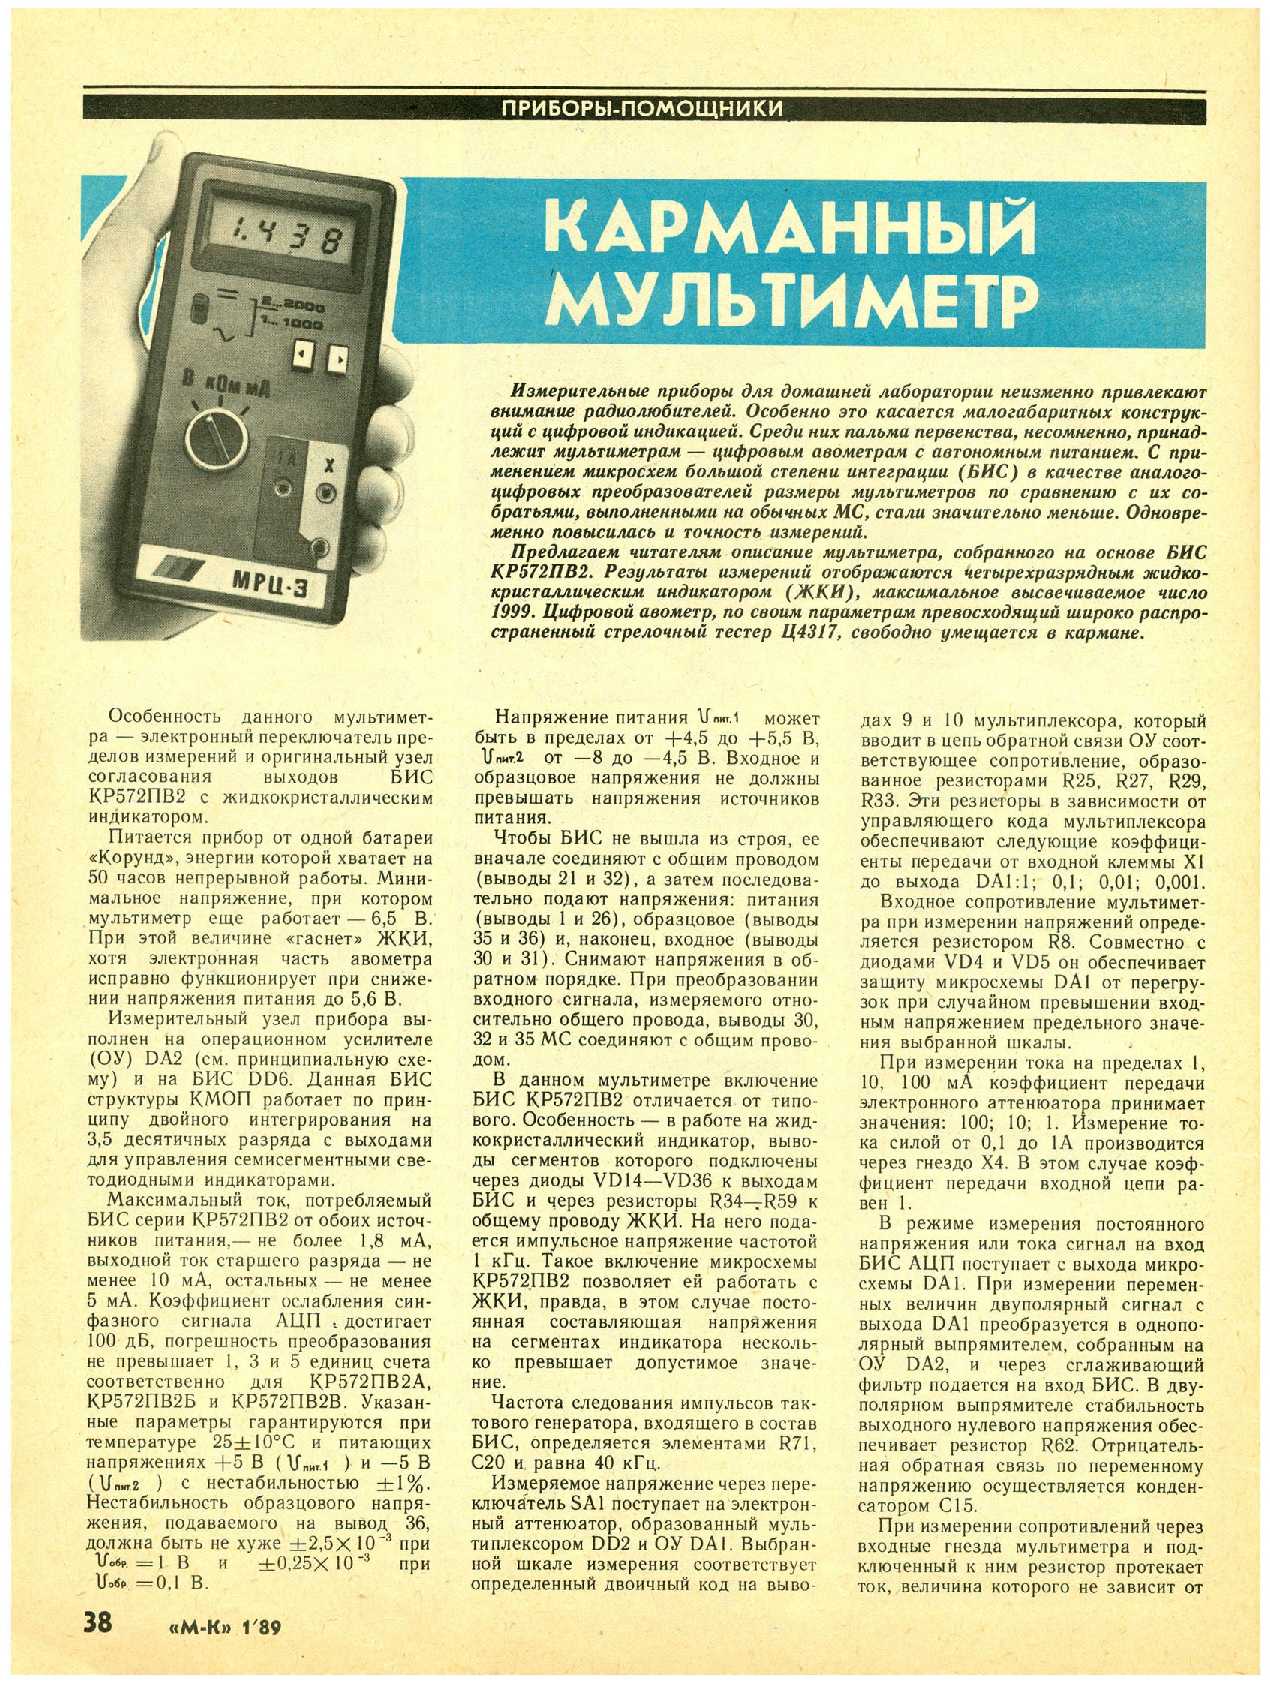 МК 1, 1989, 38 c.